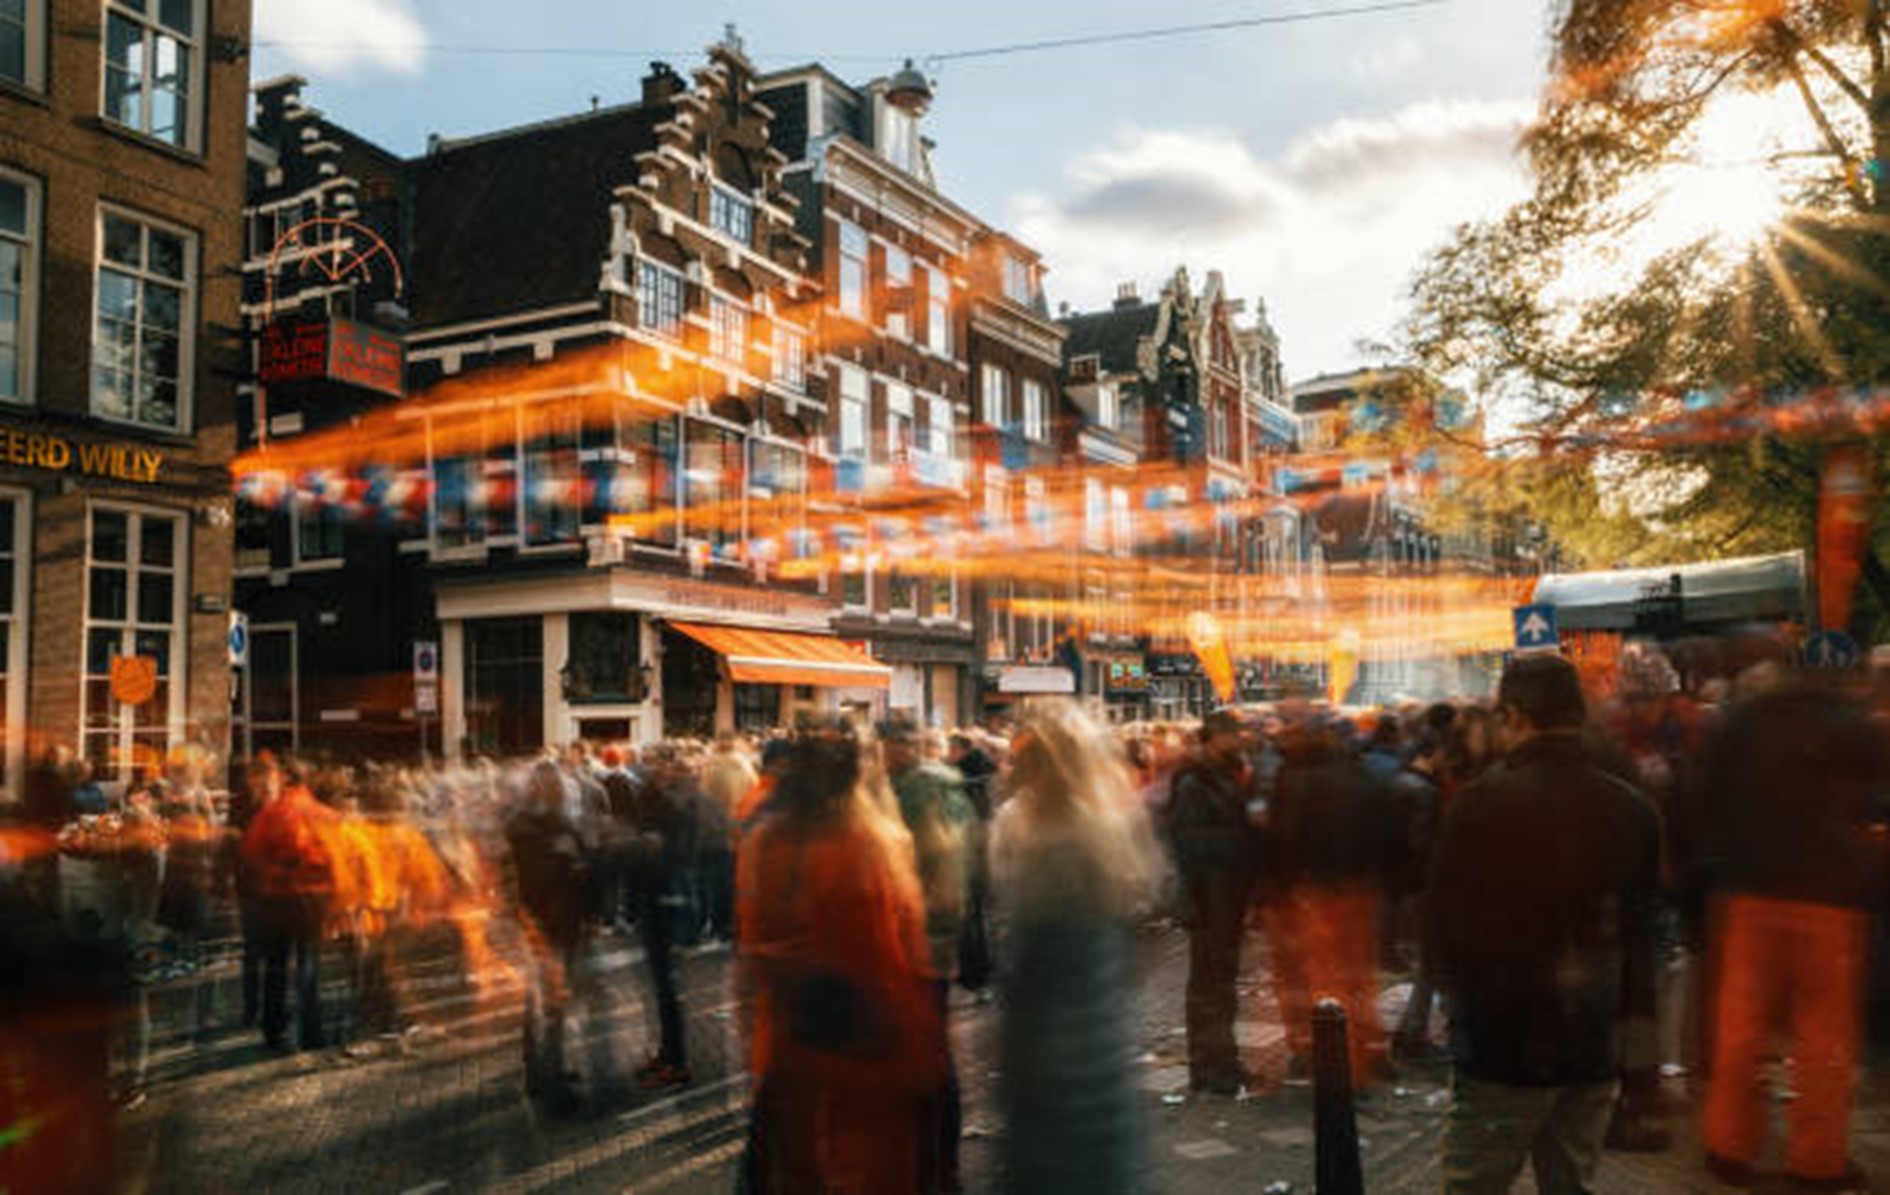 Een levendige foto van een kleine straat versierd in het thema van Koningsdag. Kleurrijke vlaggetjes wapperen in de wind terwijl mensen in oranje kleding langs de straat lopen. De straat wordt omzoomd door prachtige ouderwetse panden en de zon schijnt helder aan de blauwe hemel.